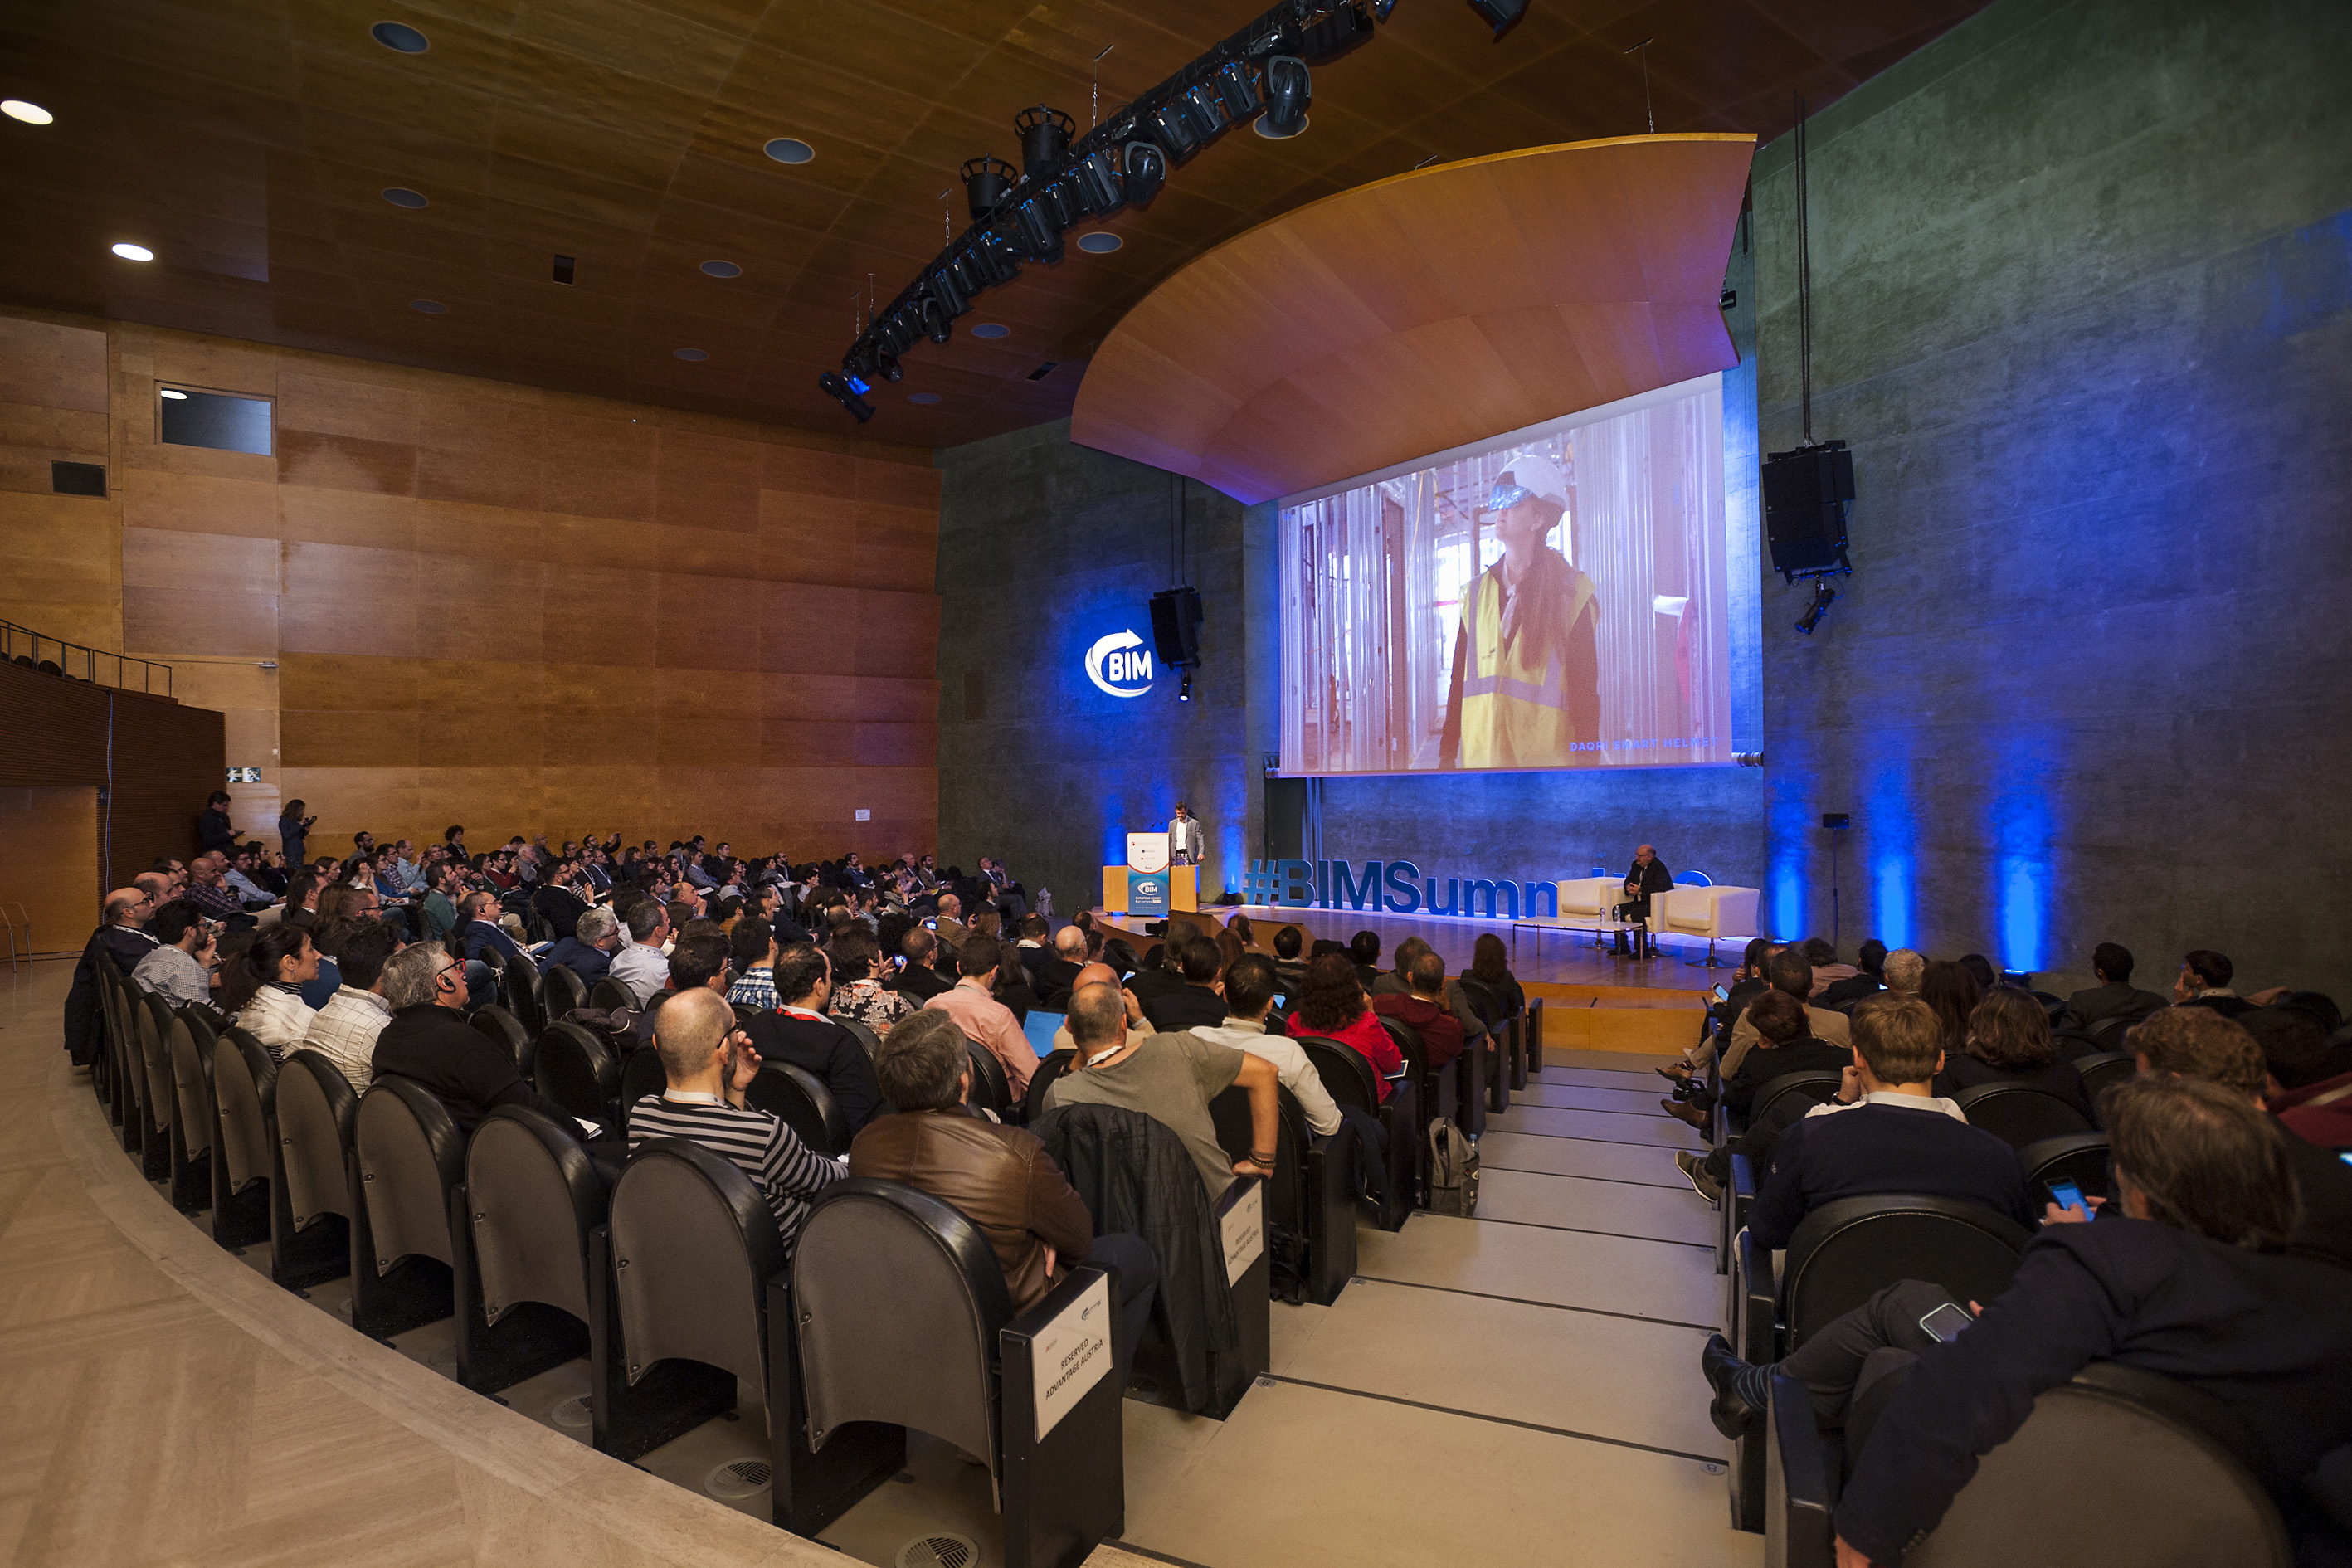 Barcelona acogerá la quinta edición del European BIM Summit los días 11 y 12 de abril